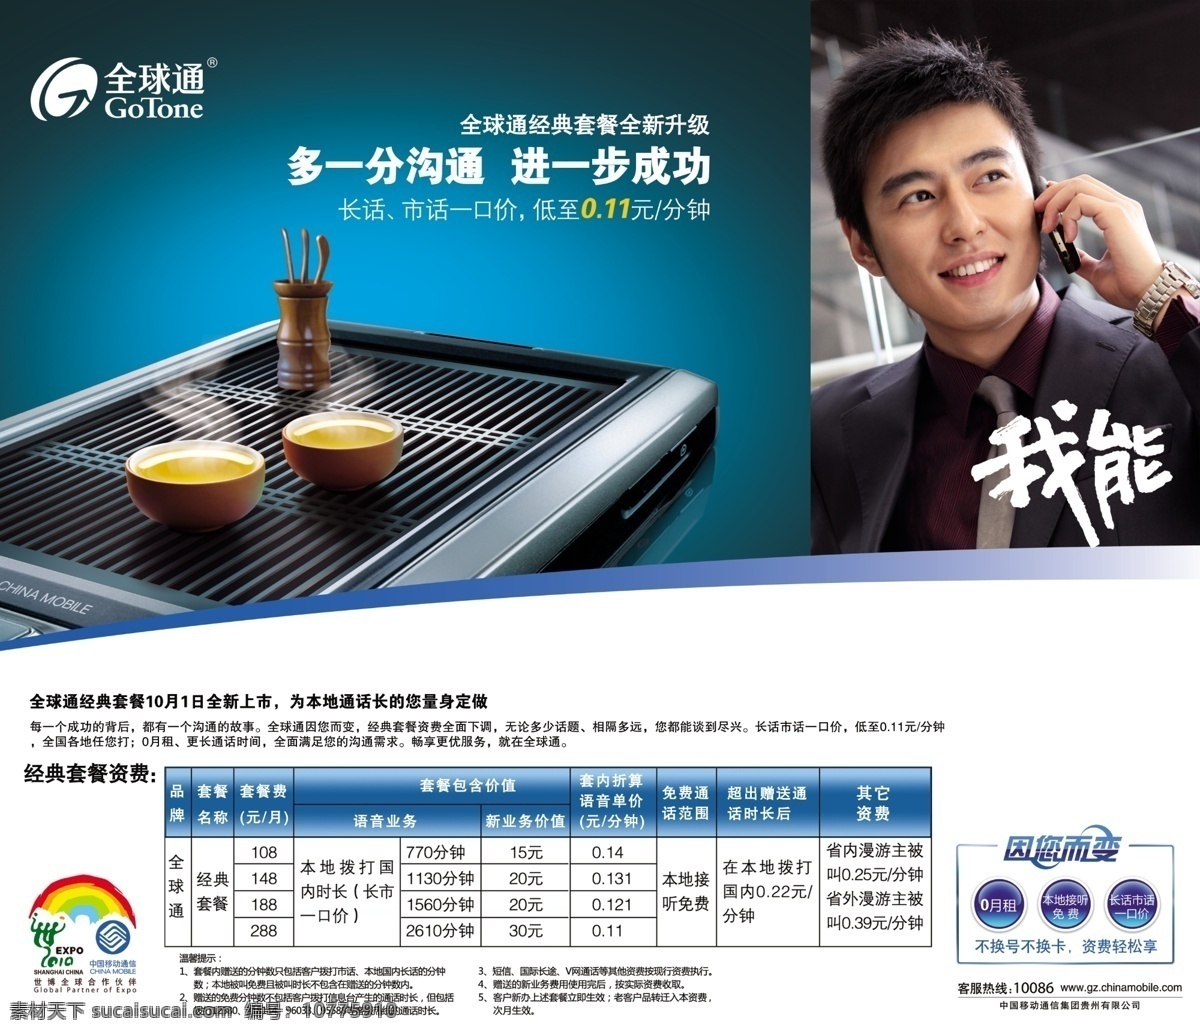 全球通 经典 套餐 茶具 广告设计模板 国内广告设计 手机 源文件 中国移动 经典套餐资费 psd源文件 餐饮素材